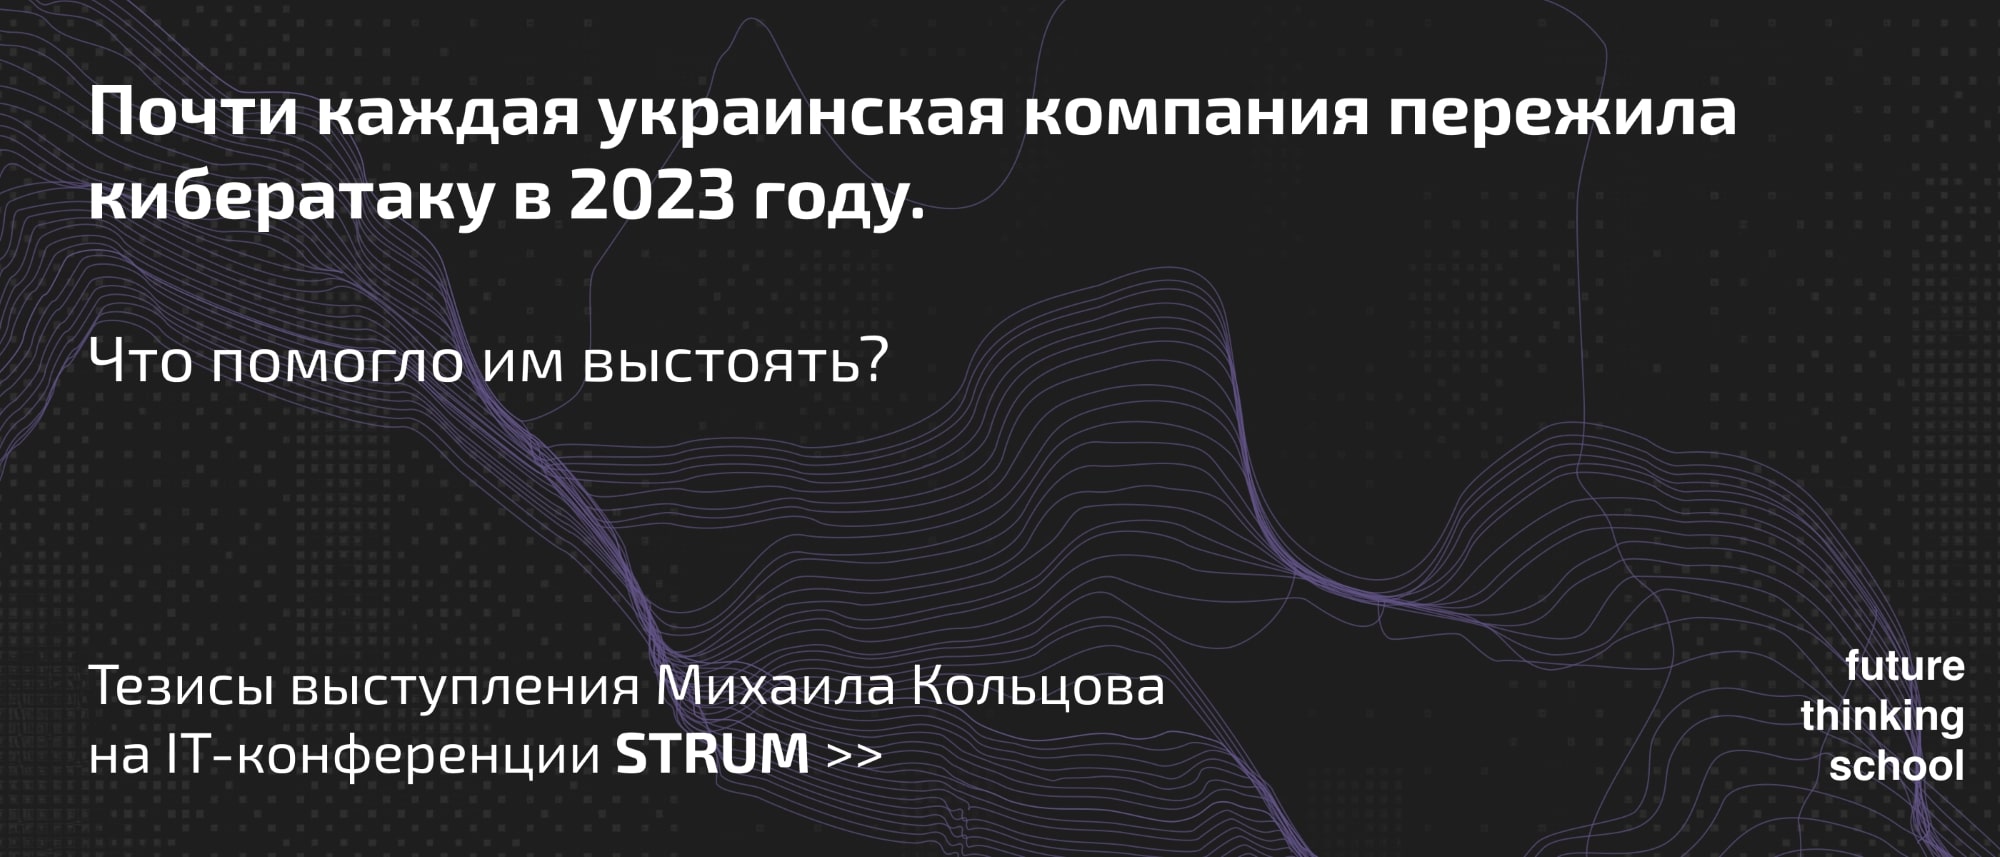 Почти каждая украинская компания пережила кибератаку в 2023 году. Что помогло им выстоять